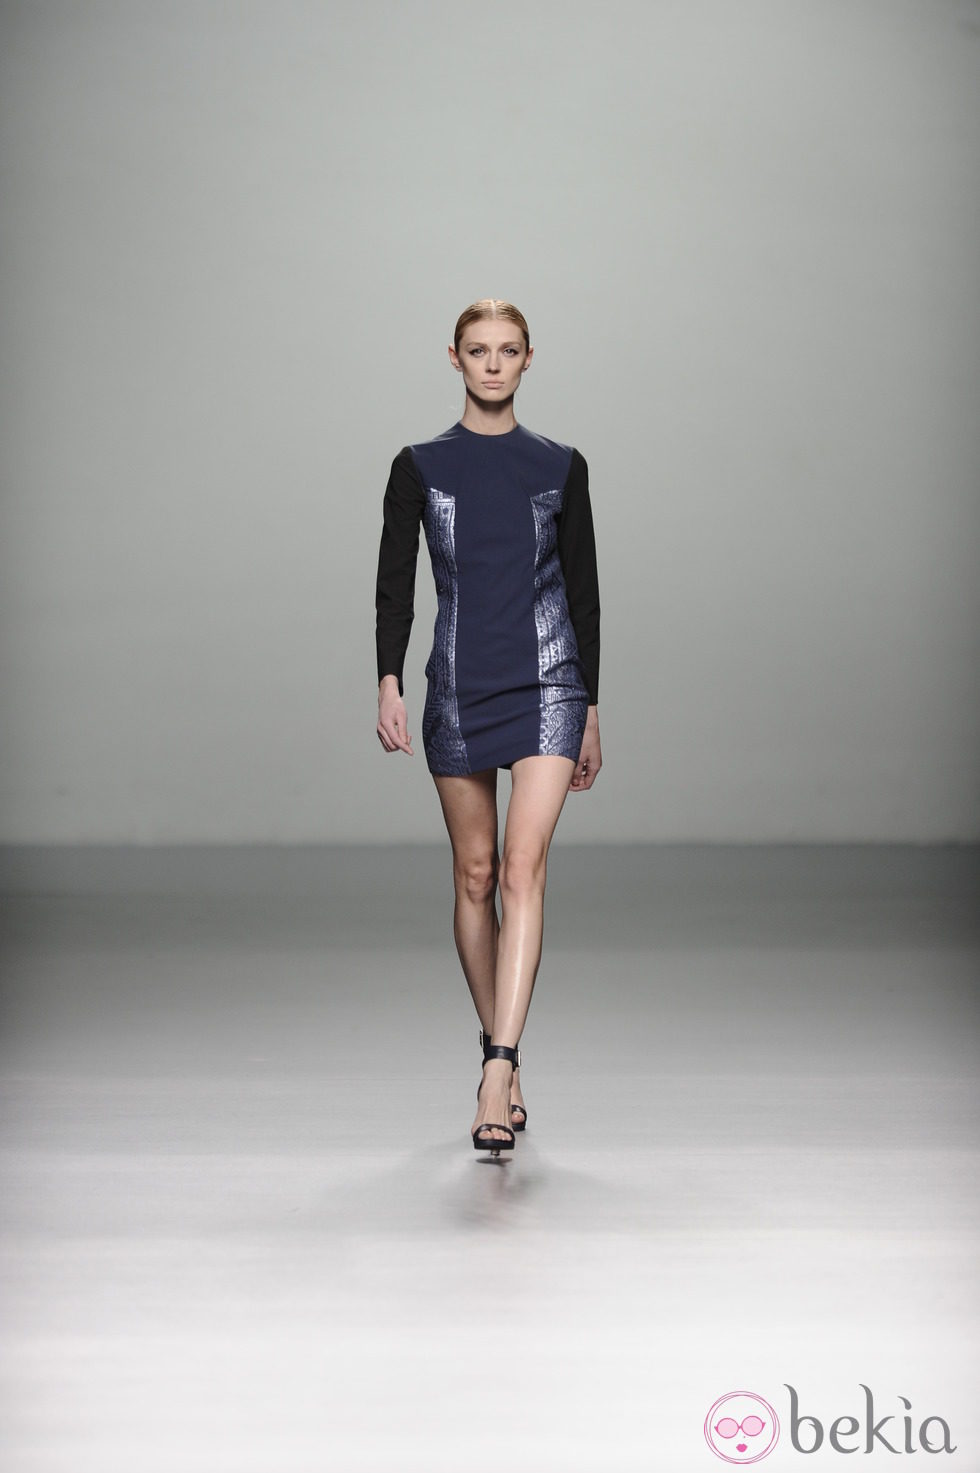 Vestido azul metalizado en la colección otoño/invierno 2013/2014 de Rabaneda en Madrid Fashion Week